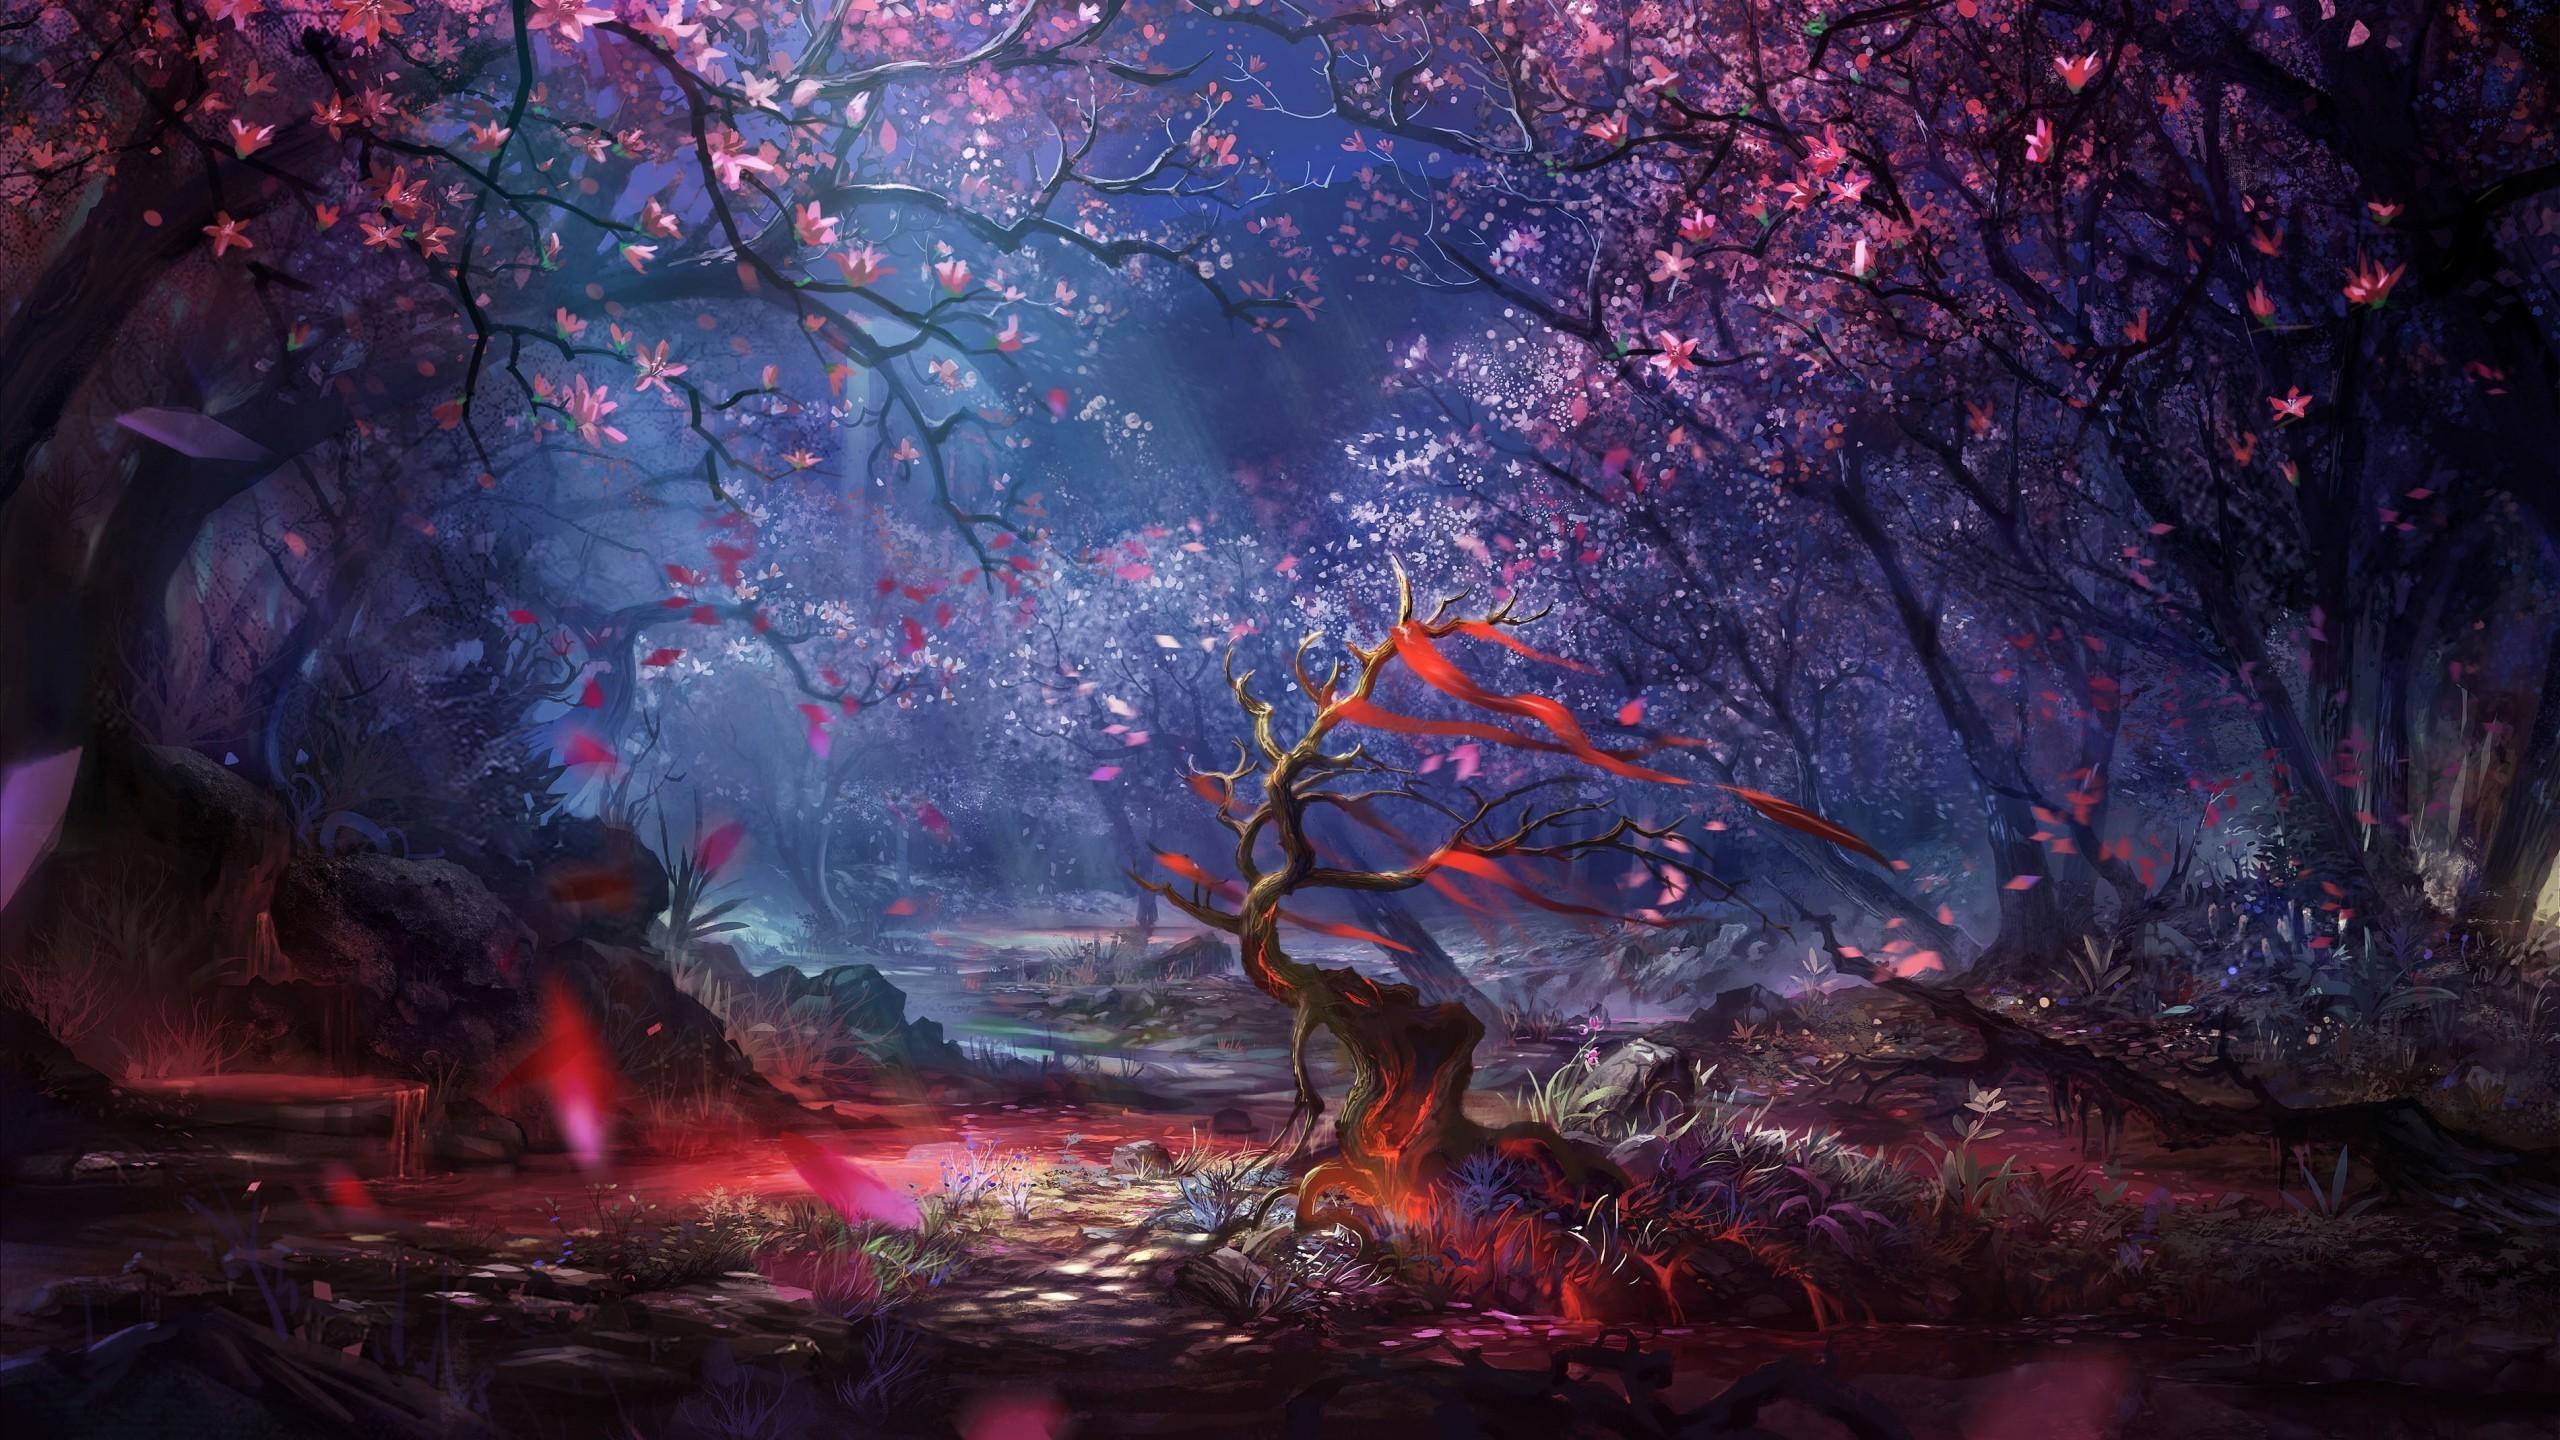 2560 x 1440 · jpeg - artwork, Fantasy art, Digital art, Forest, Trees, Colorful, Landscape ...